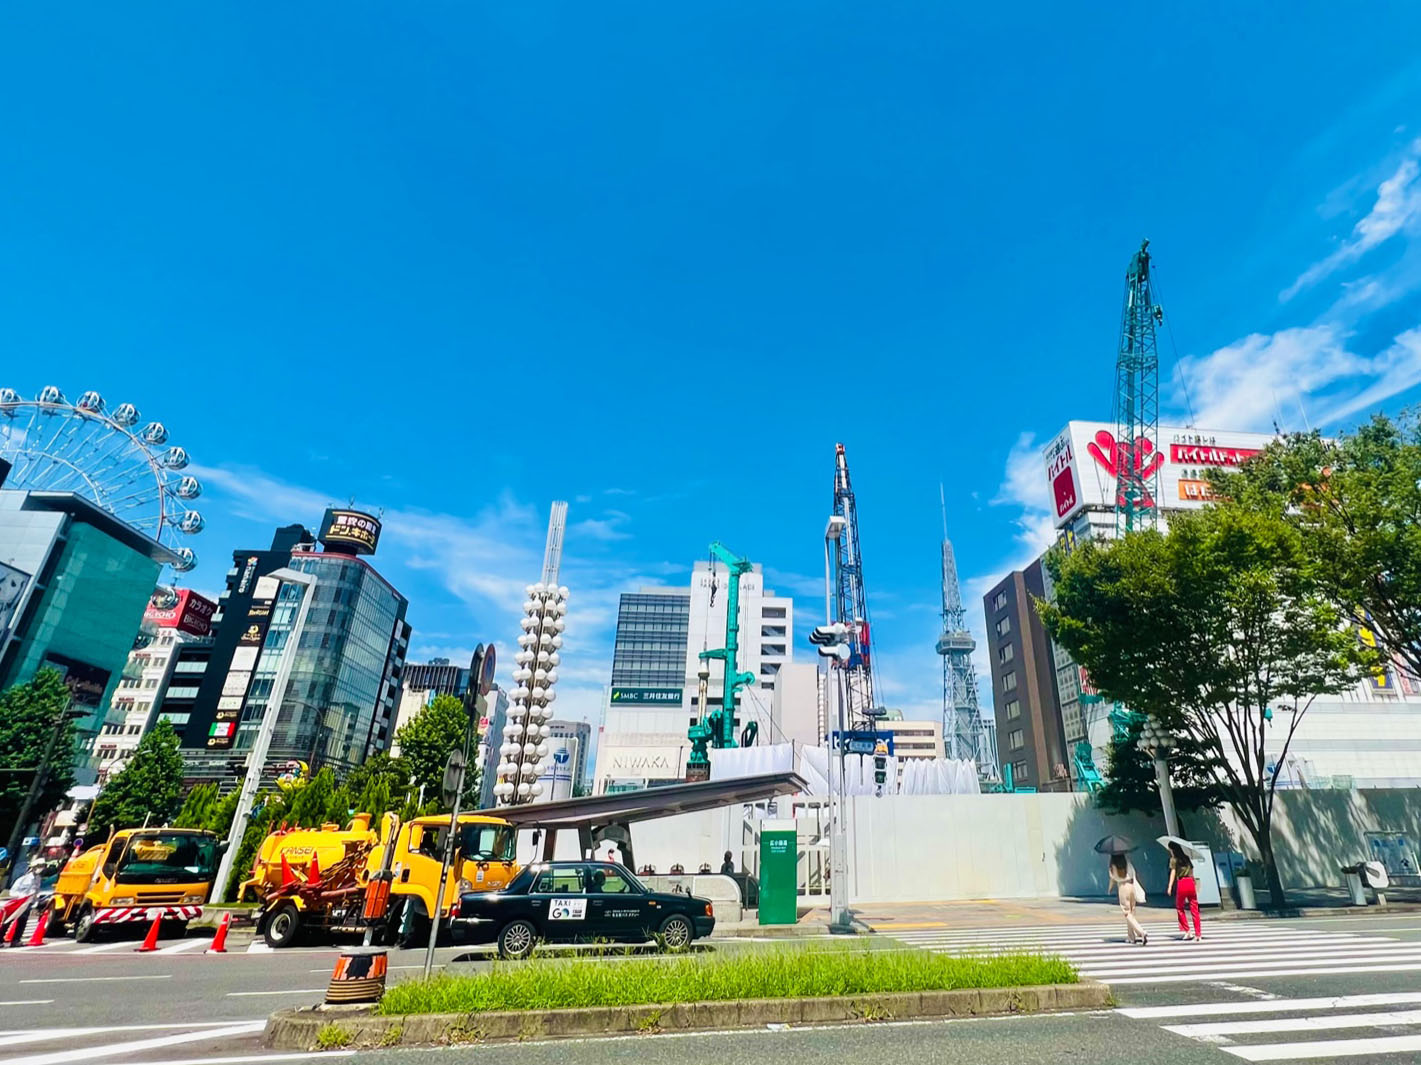 ▲これまで長年塩漬け状態で“都心の空き地”が広がっていた「栄交差点」の北東角地には、2026年夏の開業を目指し地上41階建て複合ビルの建設が進んでいる（仮称錦三丁目25番街区計画）。ヒルトンのラグジュアリーブランド『コンラッド』が東京・大阪に次いでの進出となるほか、商業施設、オフィス、シネマコンプレックスが入る予定だ